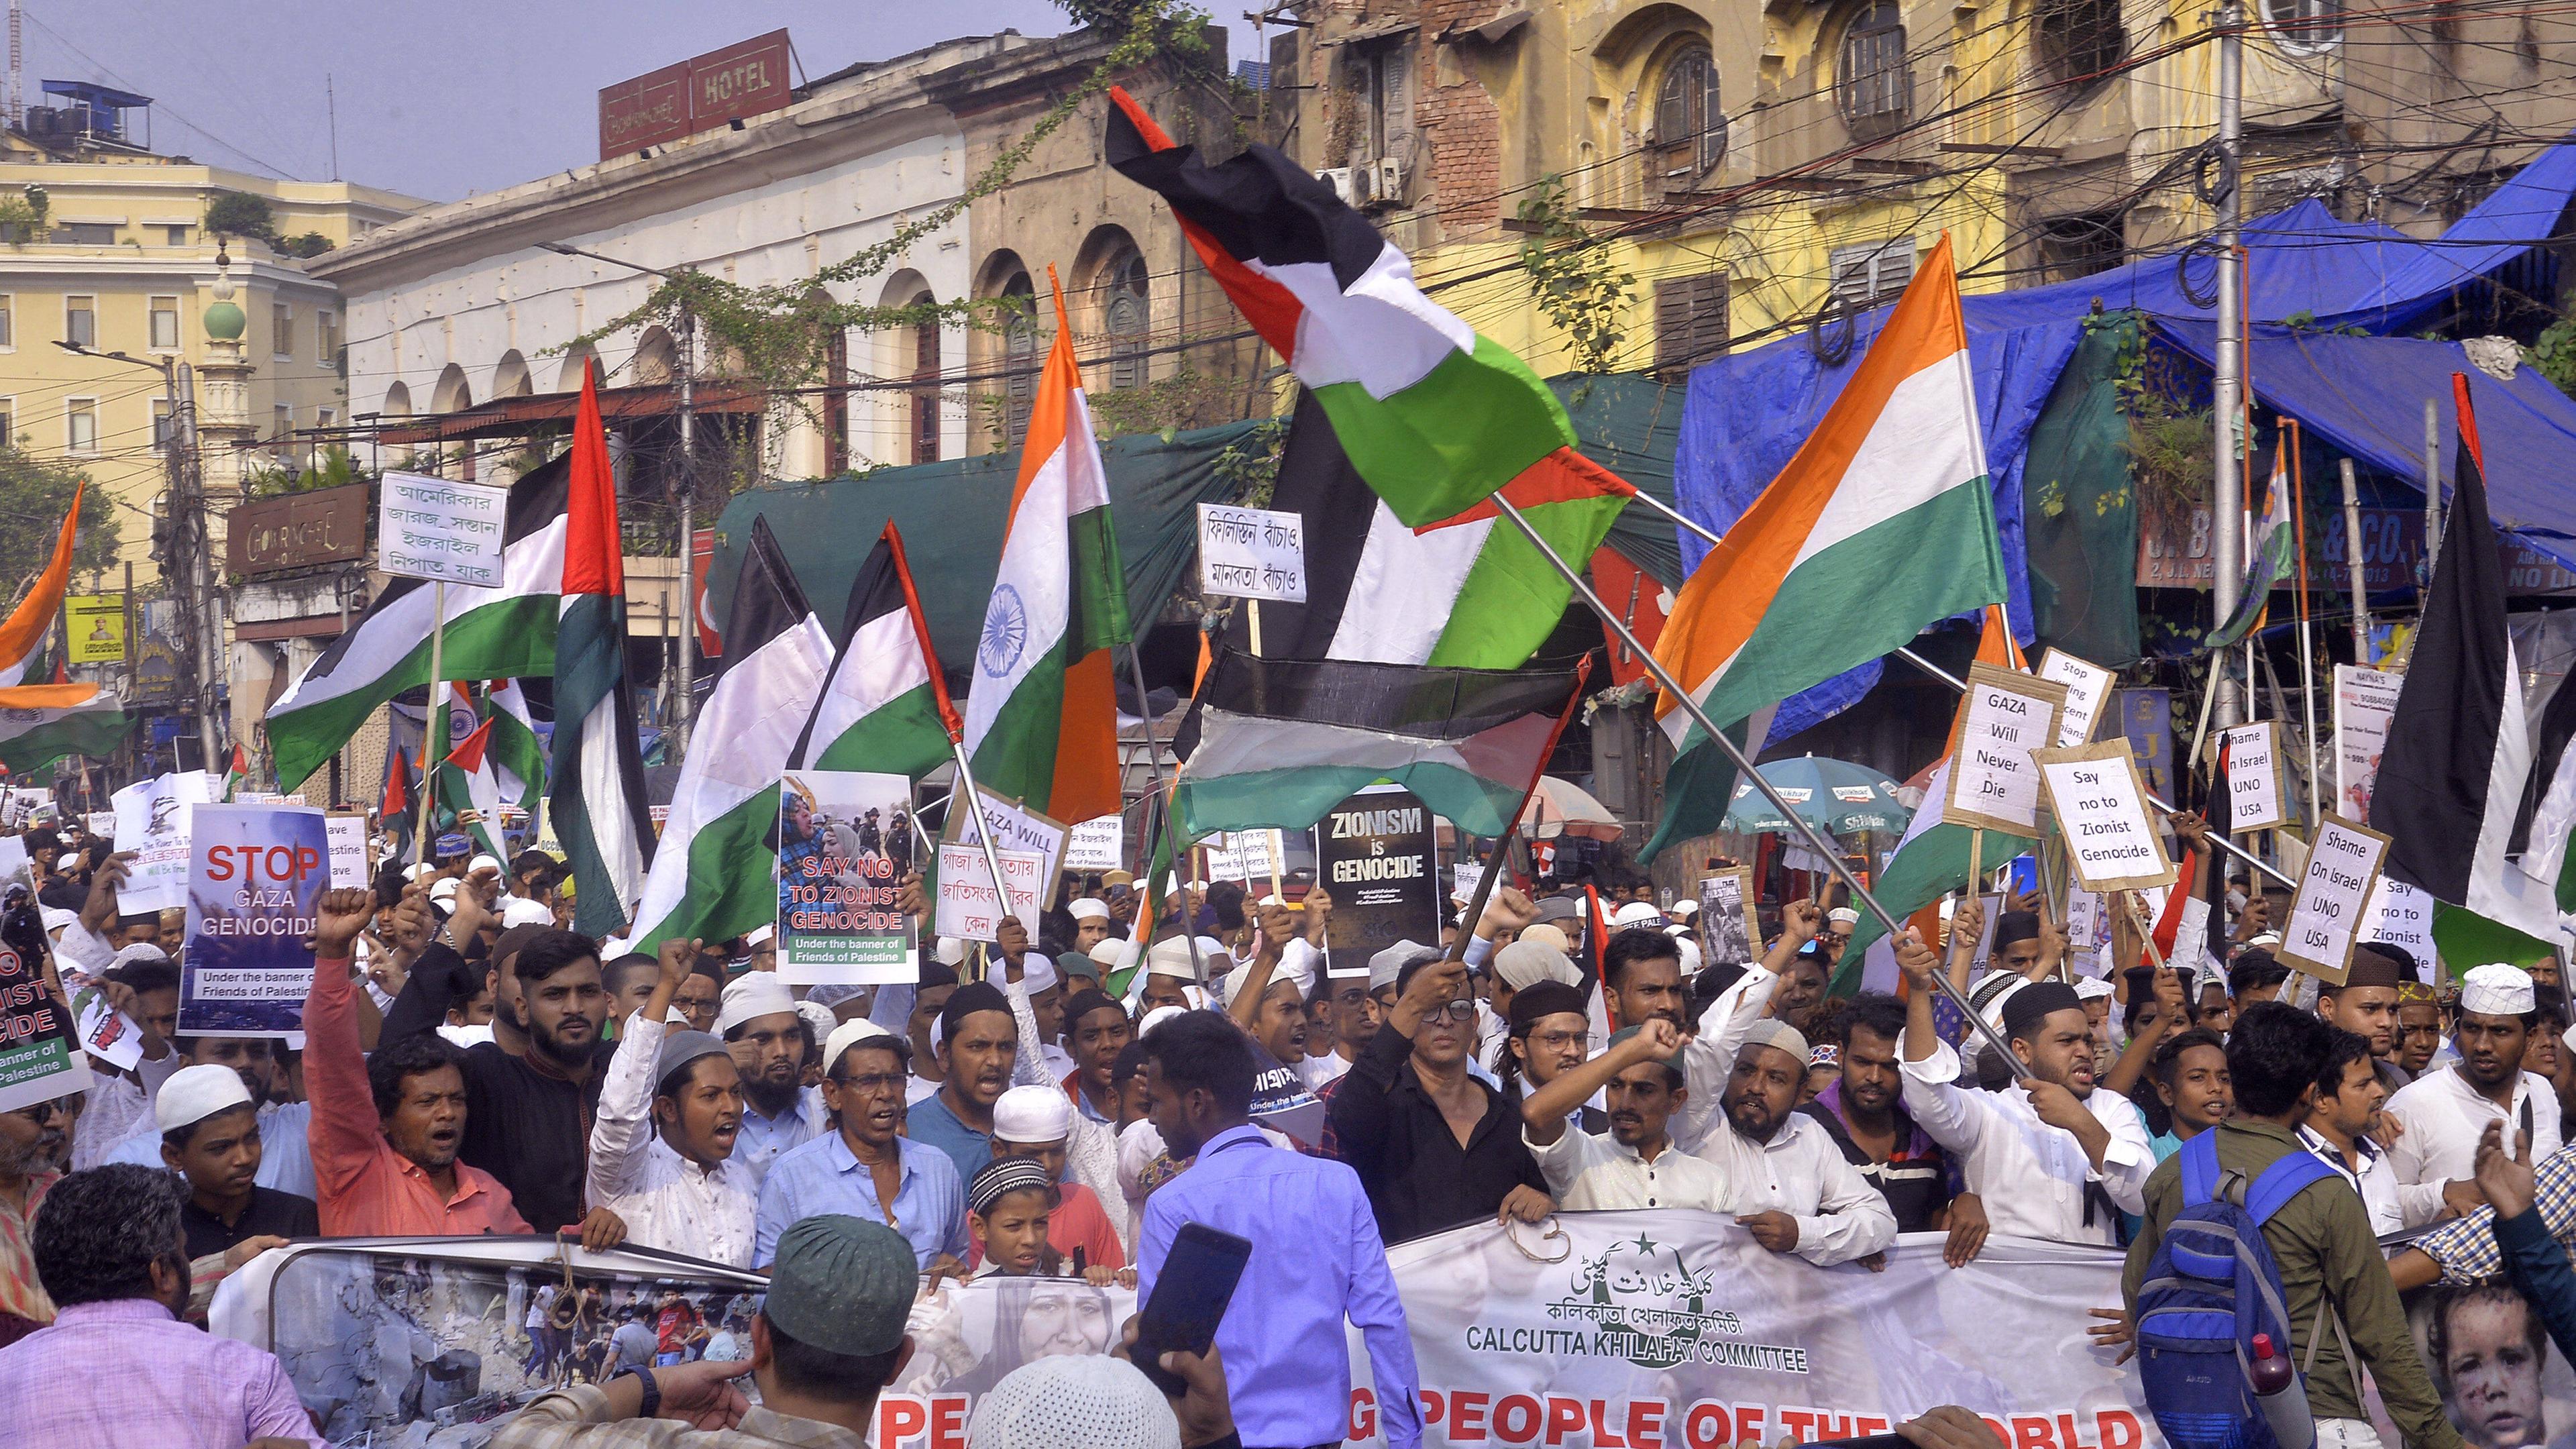 Pro-palästinensische Demonstranten in Kolkata, Indien